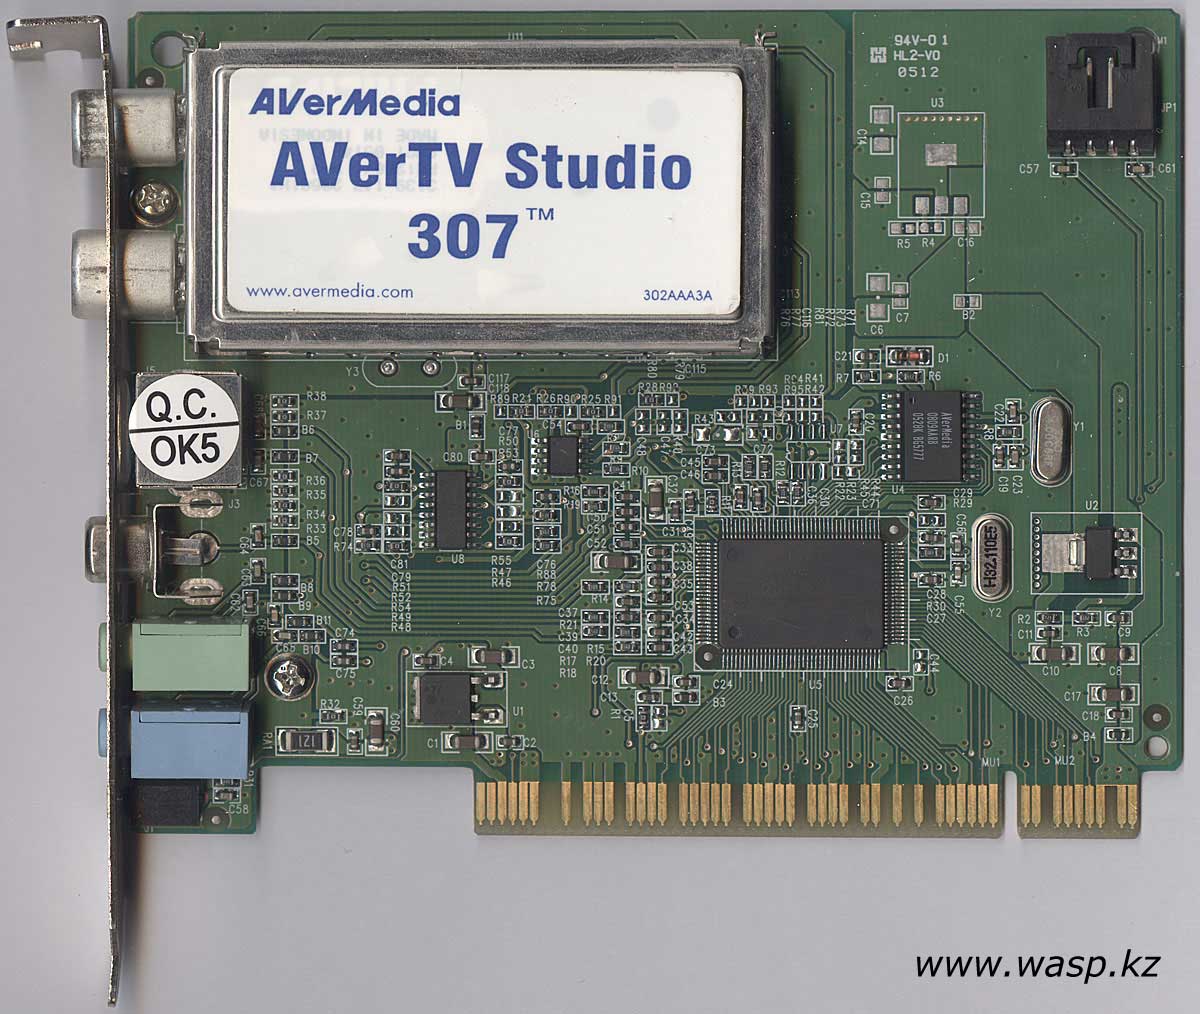 AVerTV Studio 307 ТВ-тюнер обзор